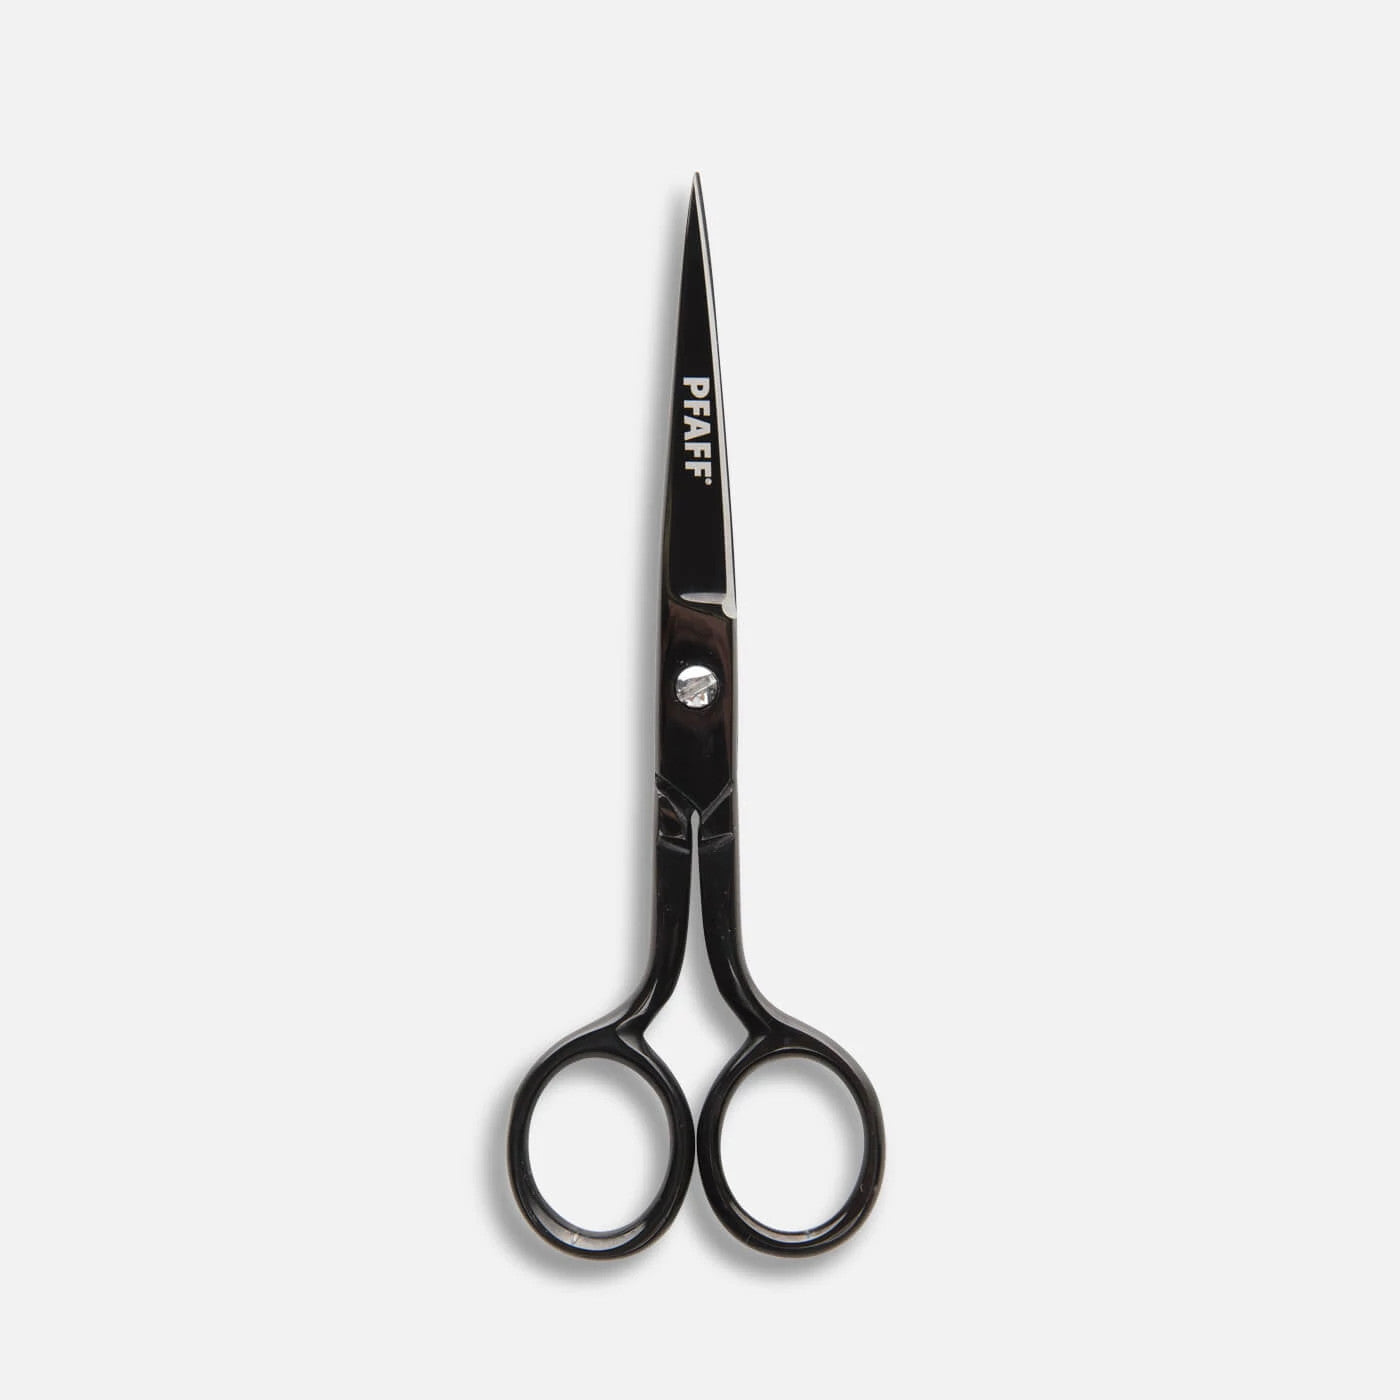 Pfaff 6" Applique Scissors